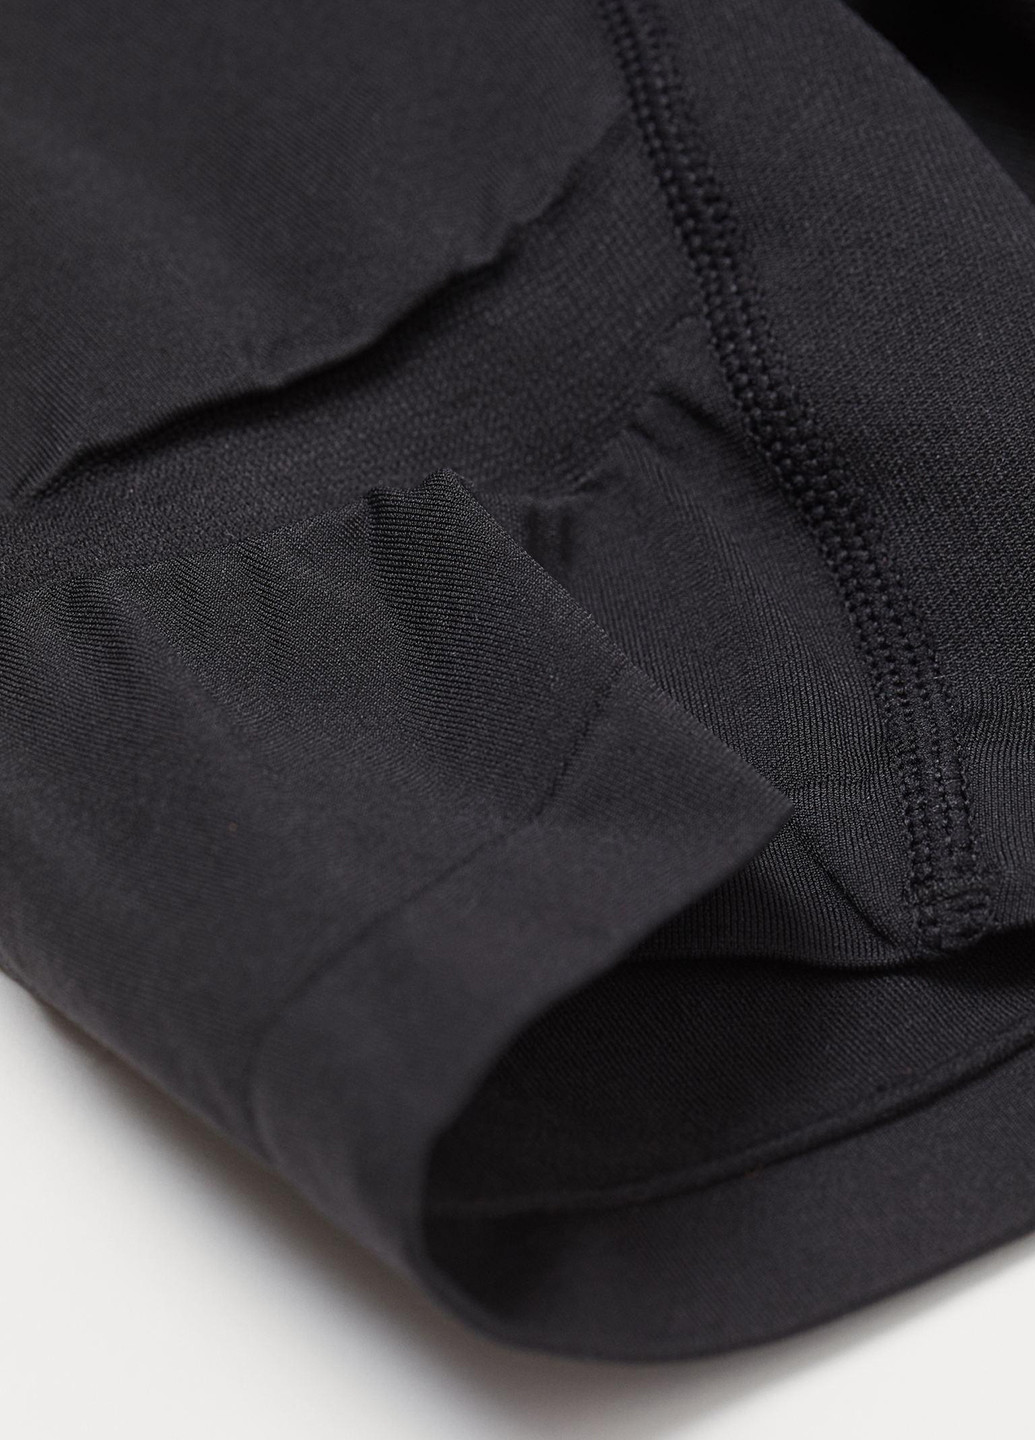 Трусы H&M трусики-шорты однотонные чёрные спортивные полиамид